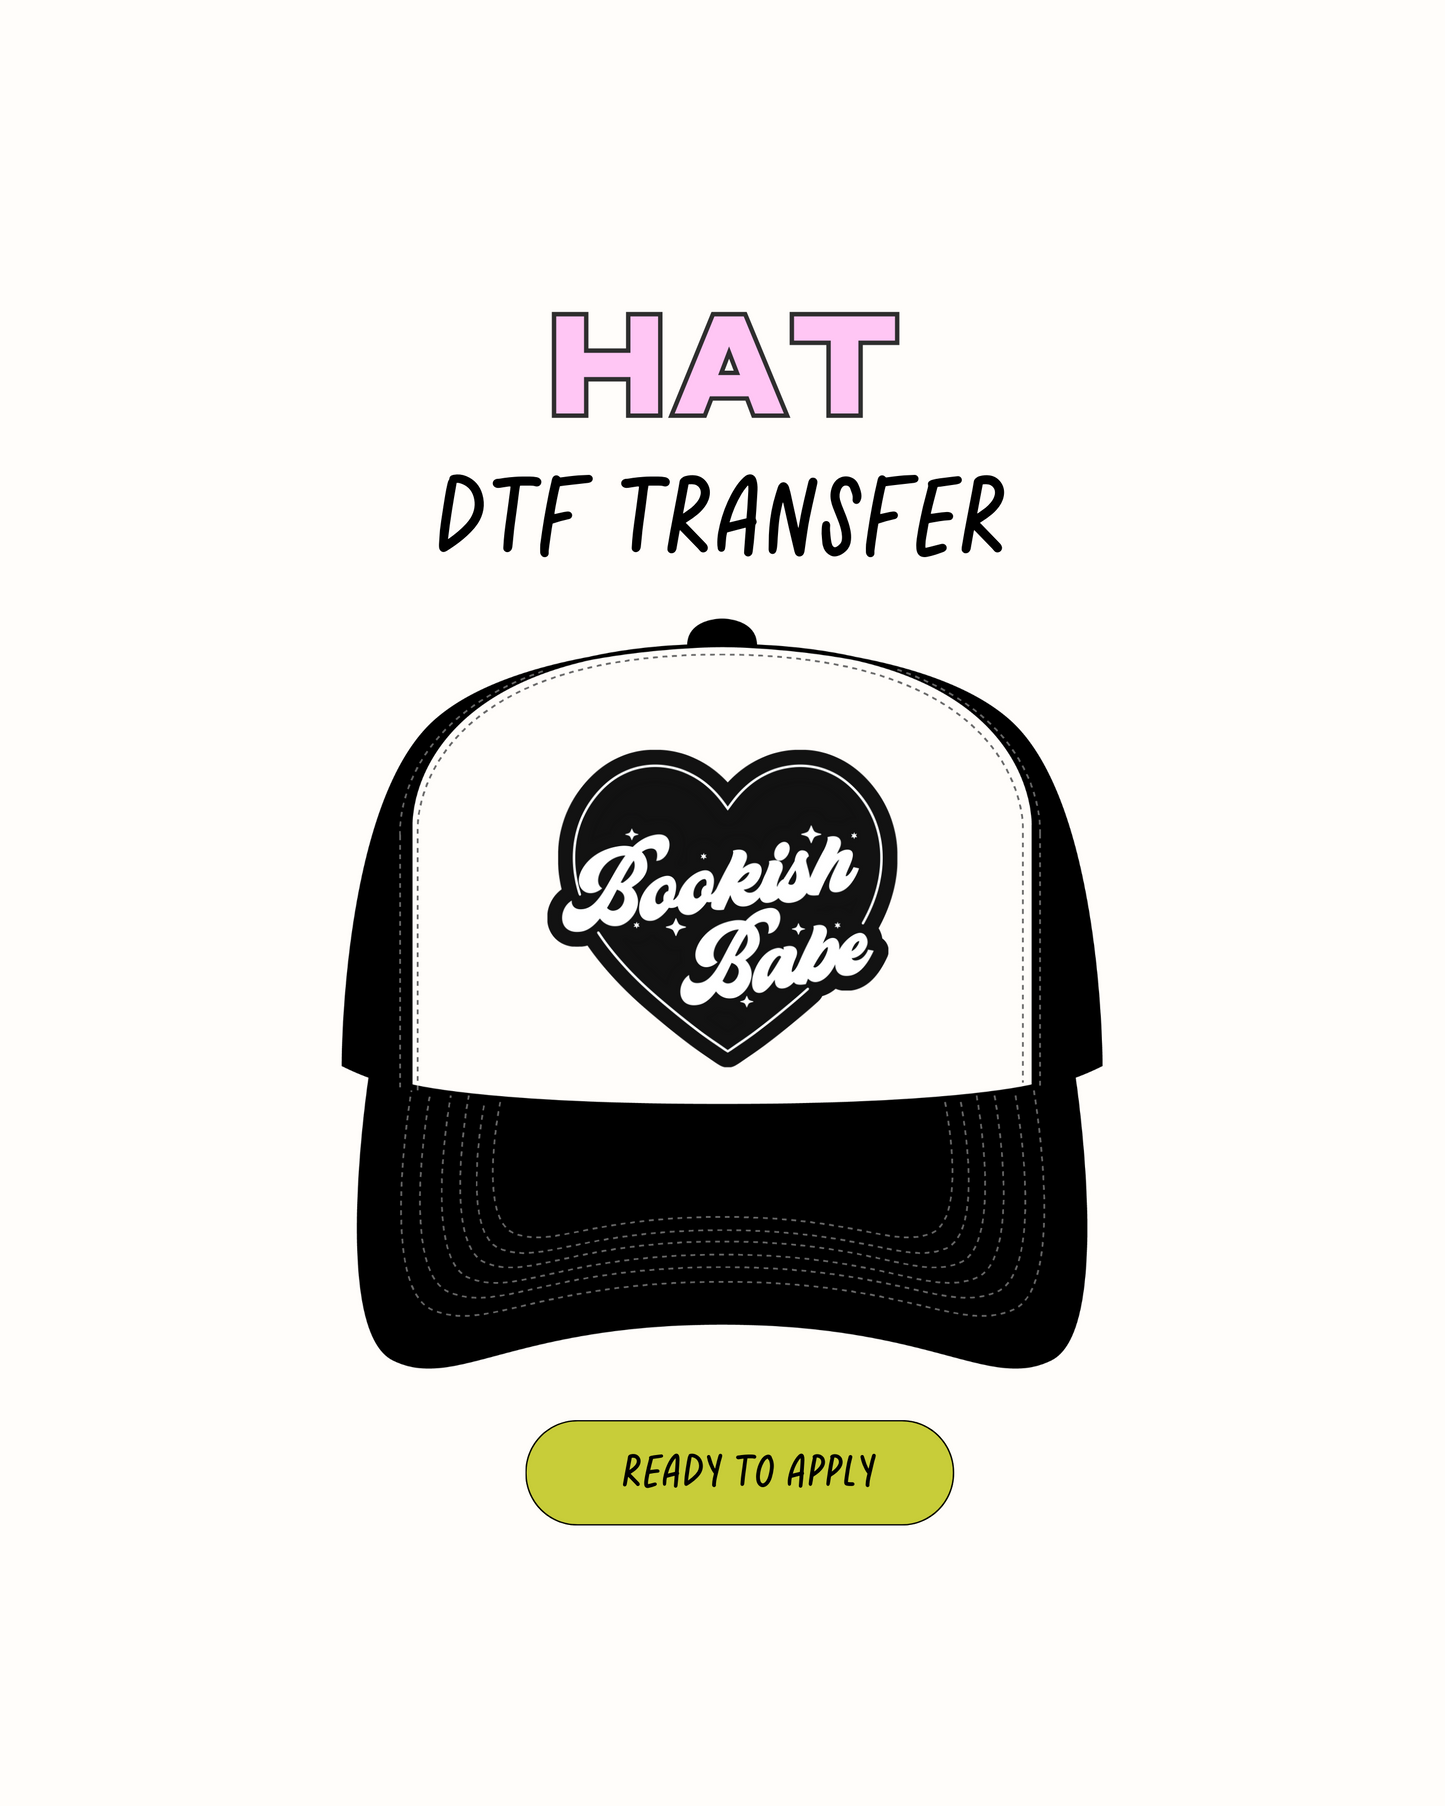 Bookish Girl - Transferencias de sombreros DTF 